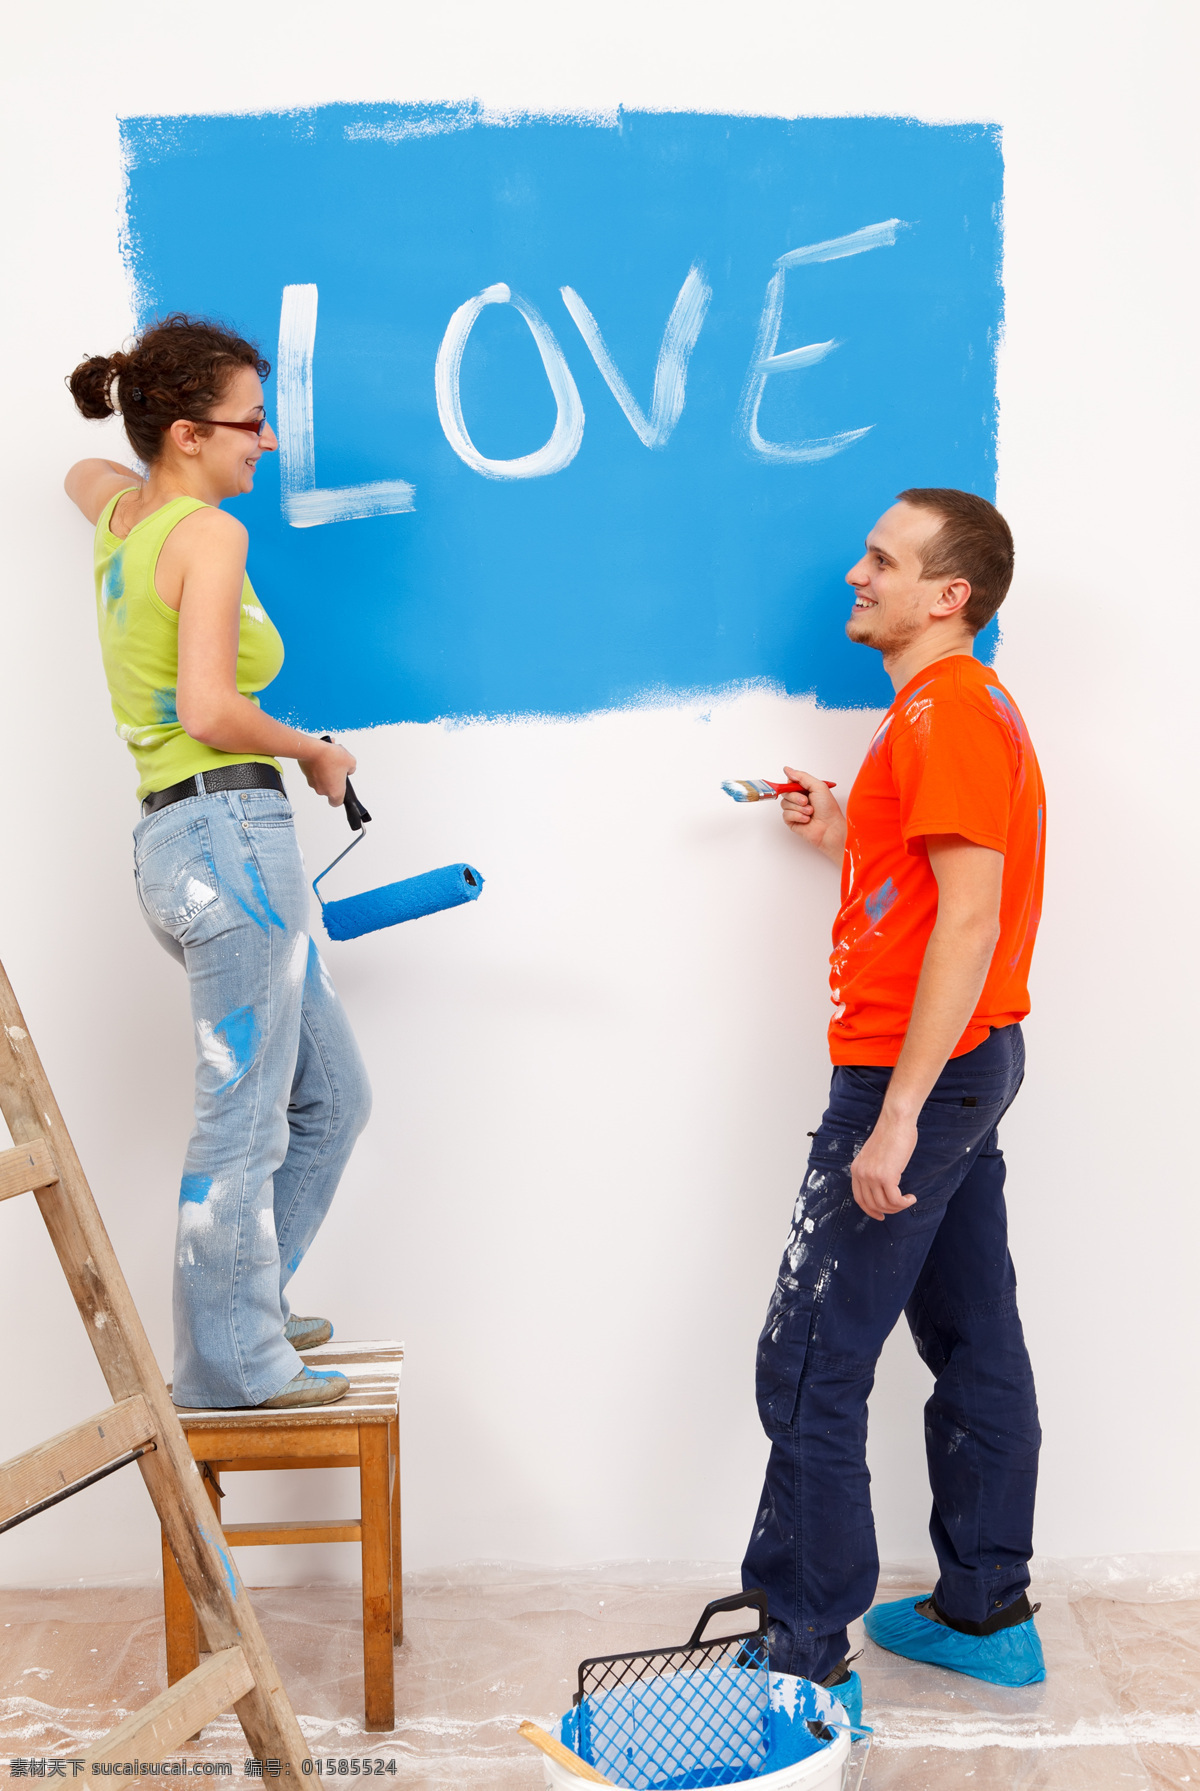 刷 油漆 夫妻 粉刷 墙壁 刷墙 刷漆 梯子 恩爱 夫妇 情侣 恋人 浪漫 情侣图片 人物图片